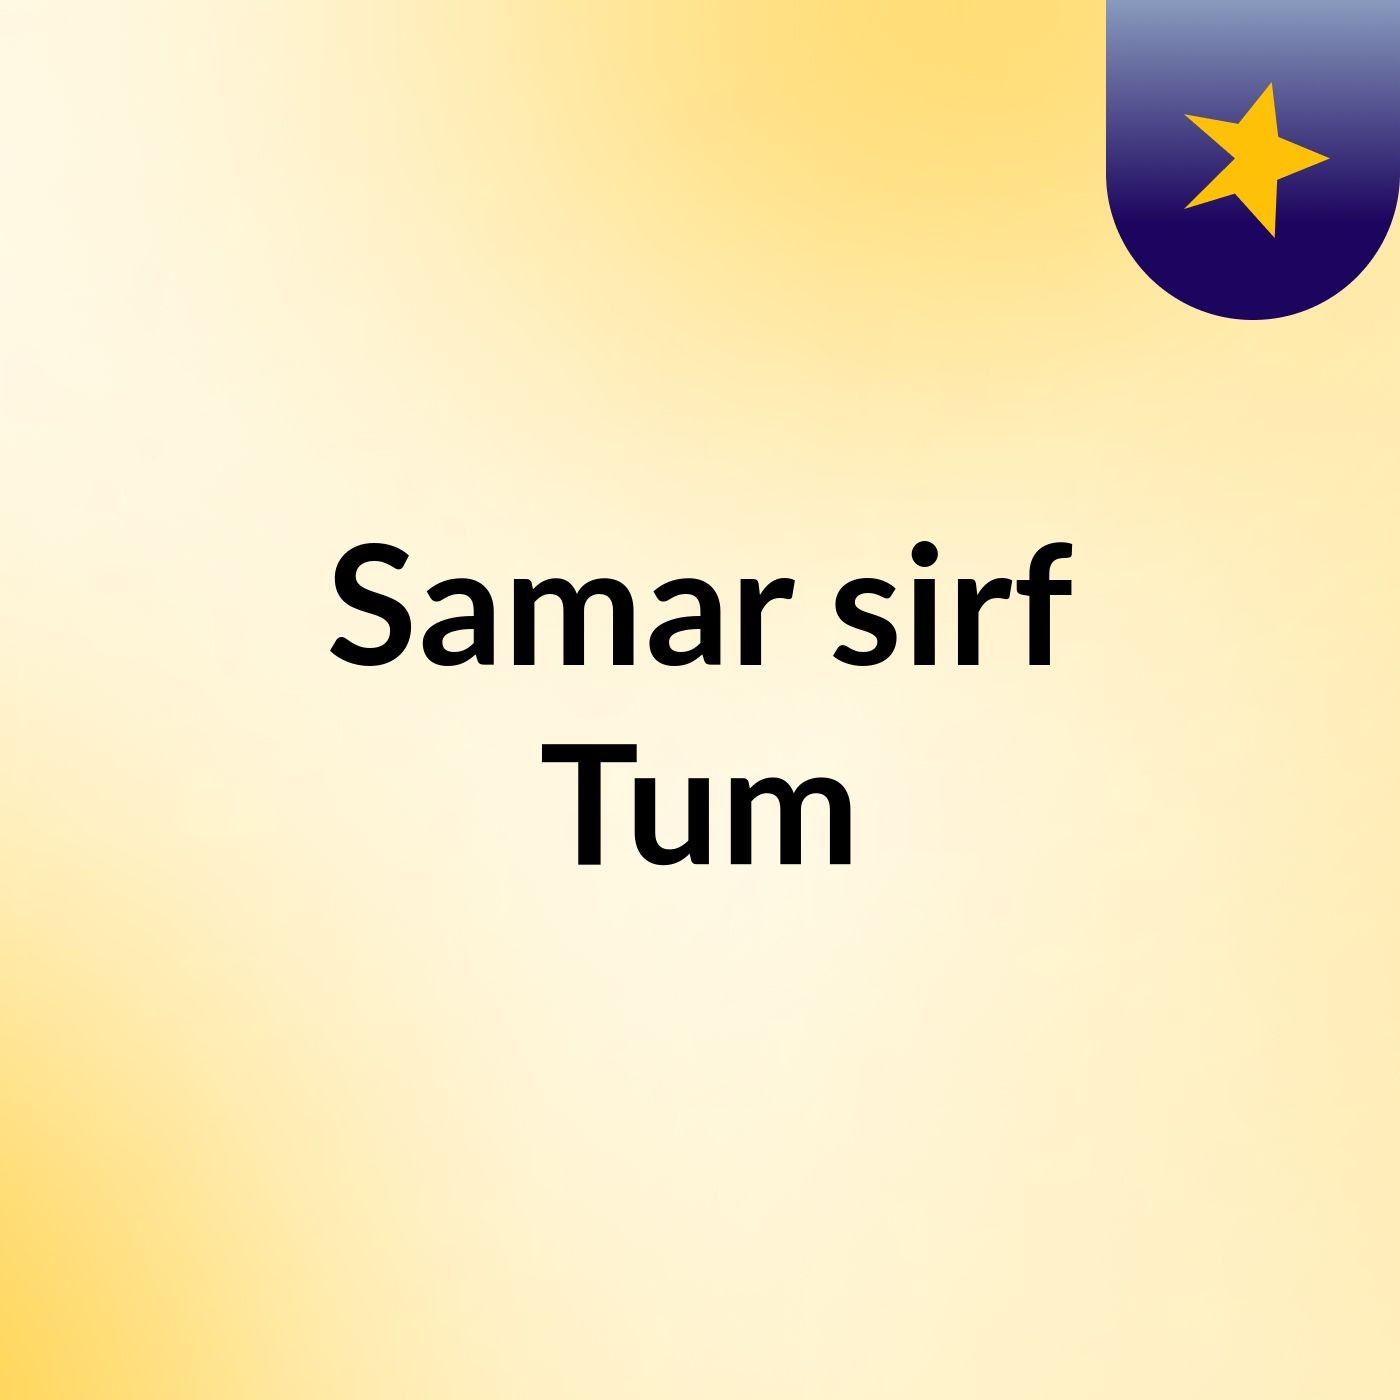 Episode 105 - Samar sirf Tum